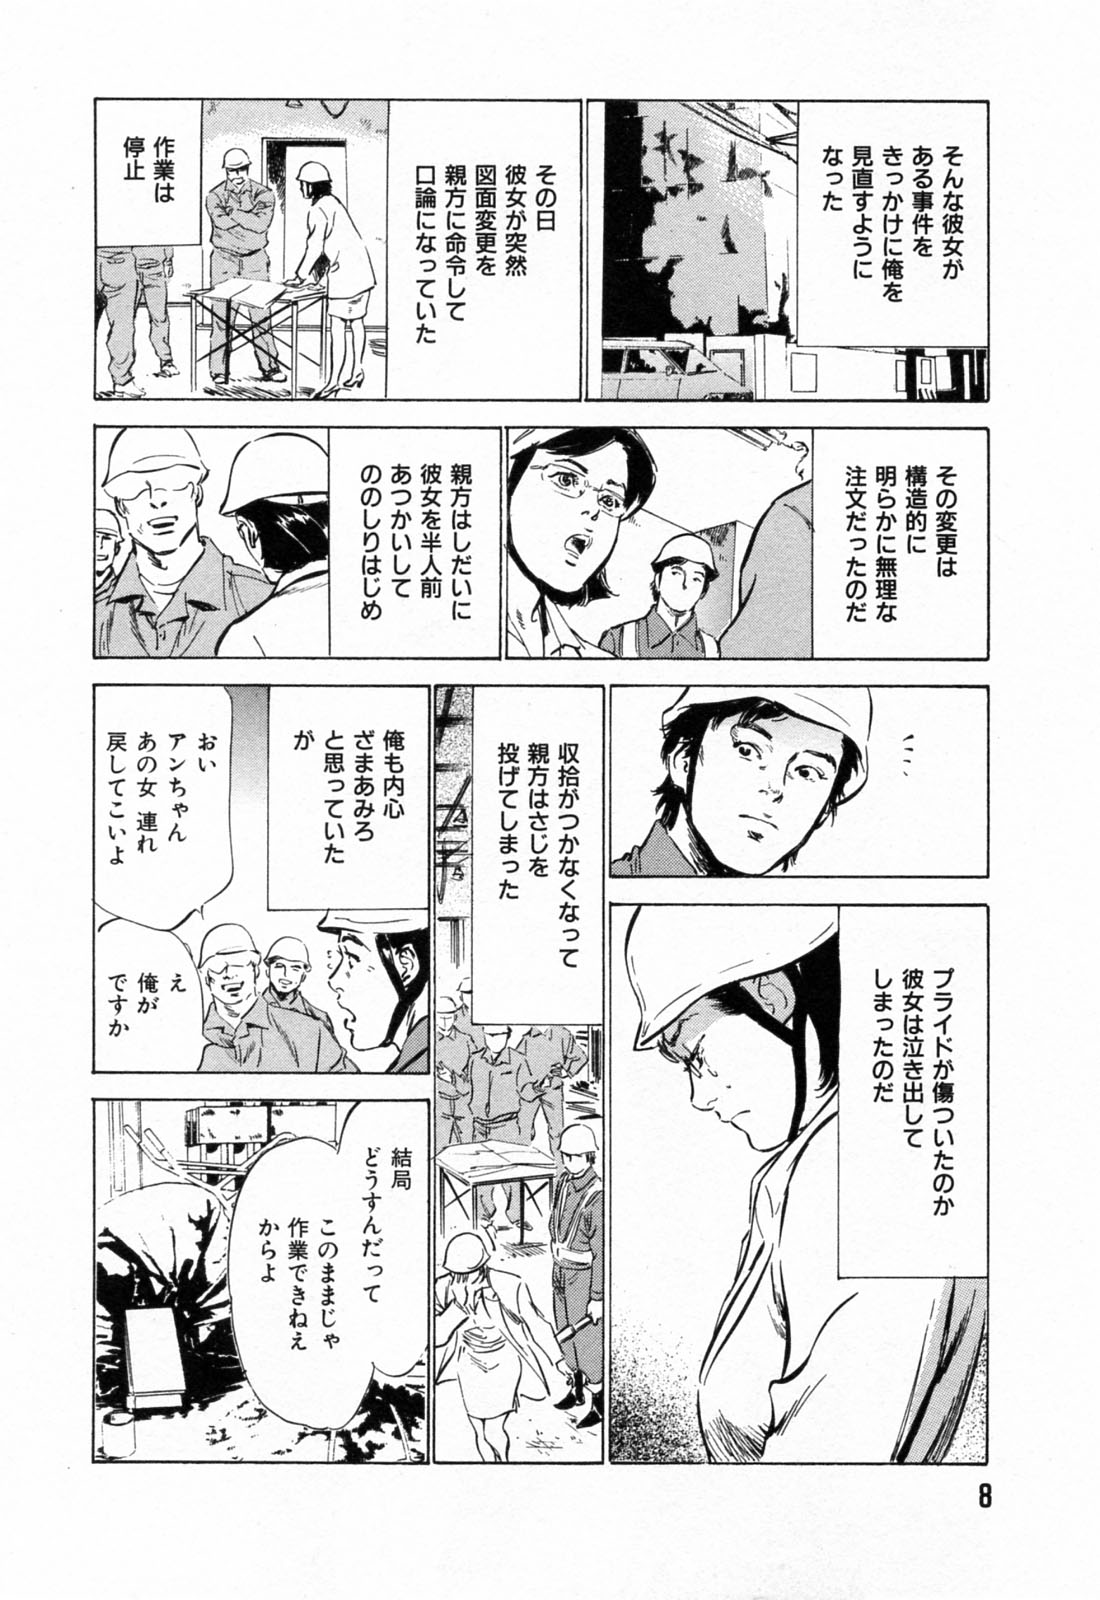 [Hazuki Kaoru] Gokinjo Okusama no Naishobanashi 1 page 10 full